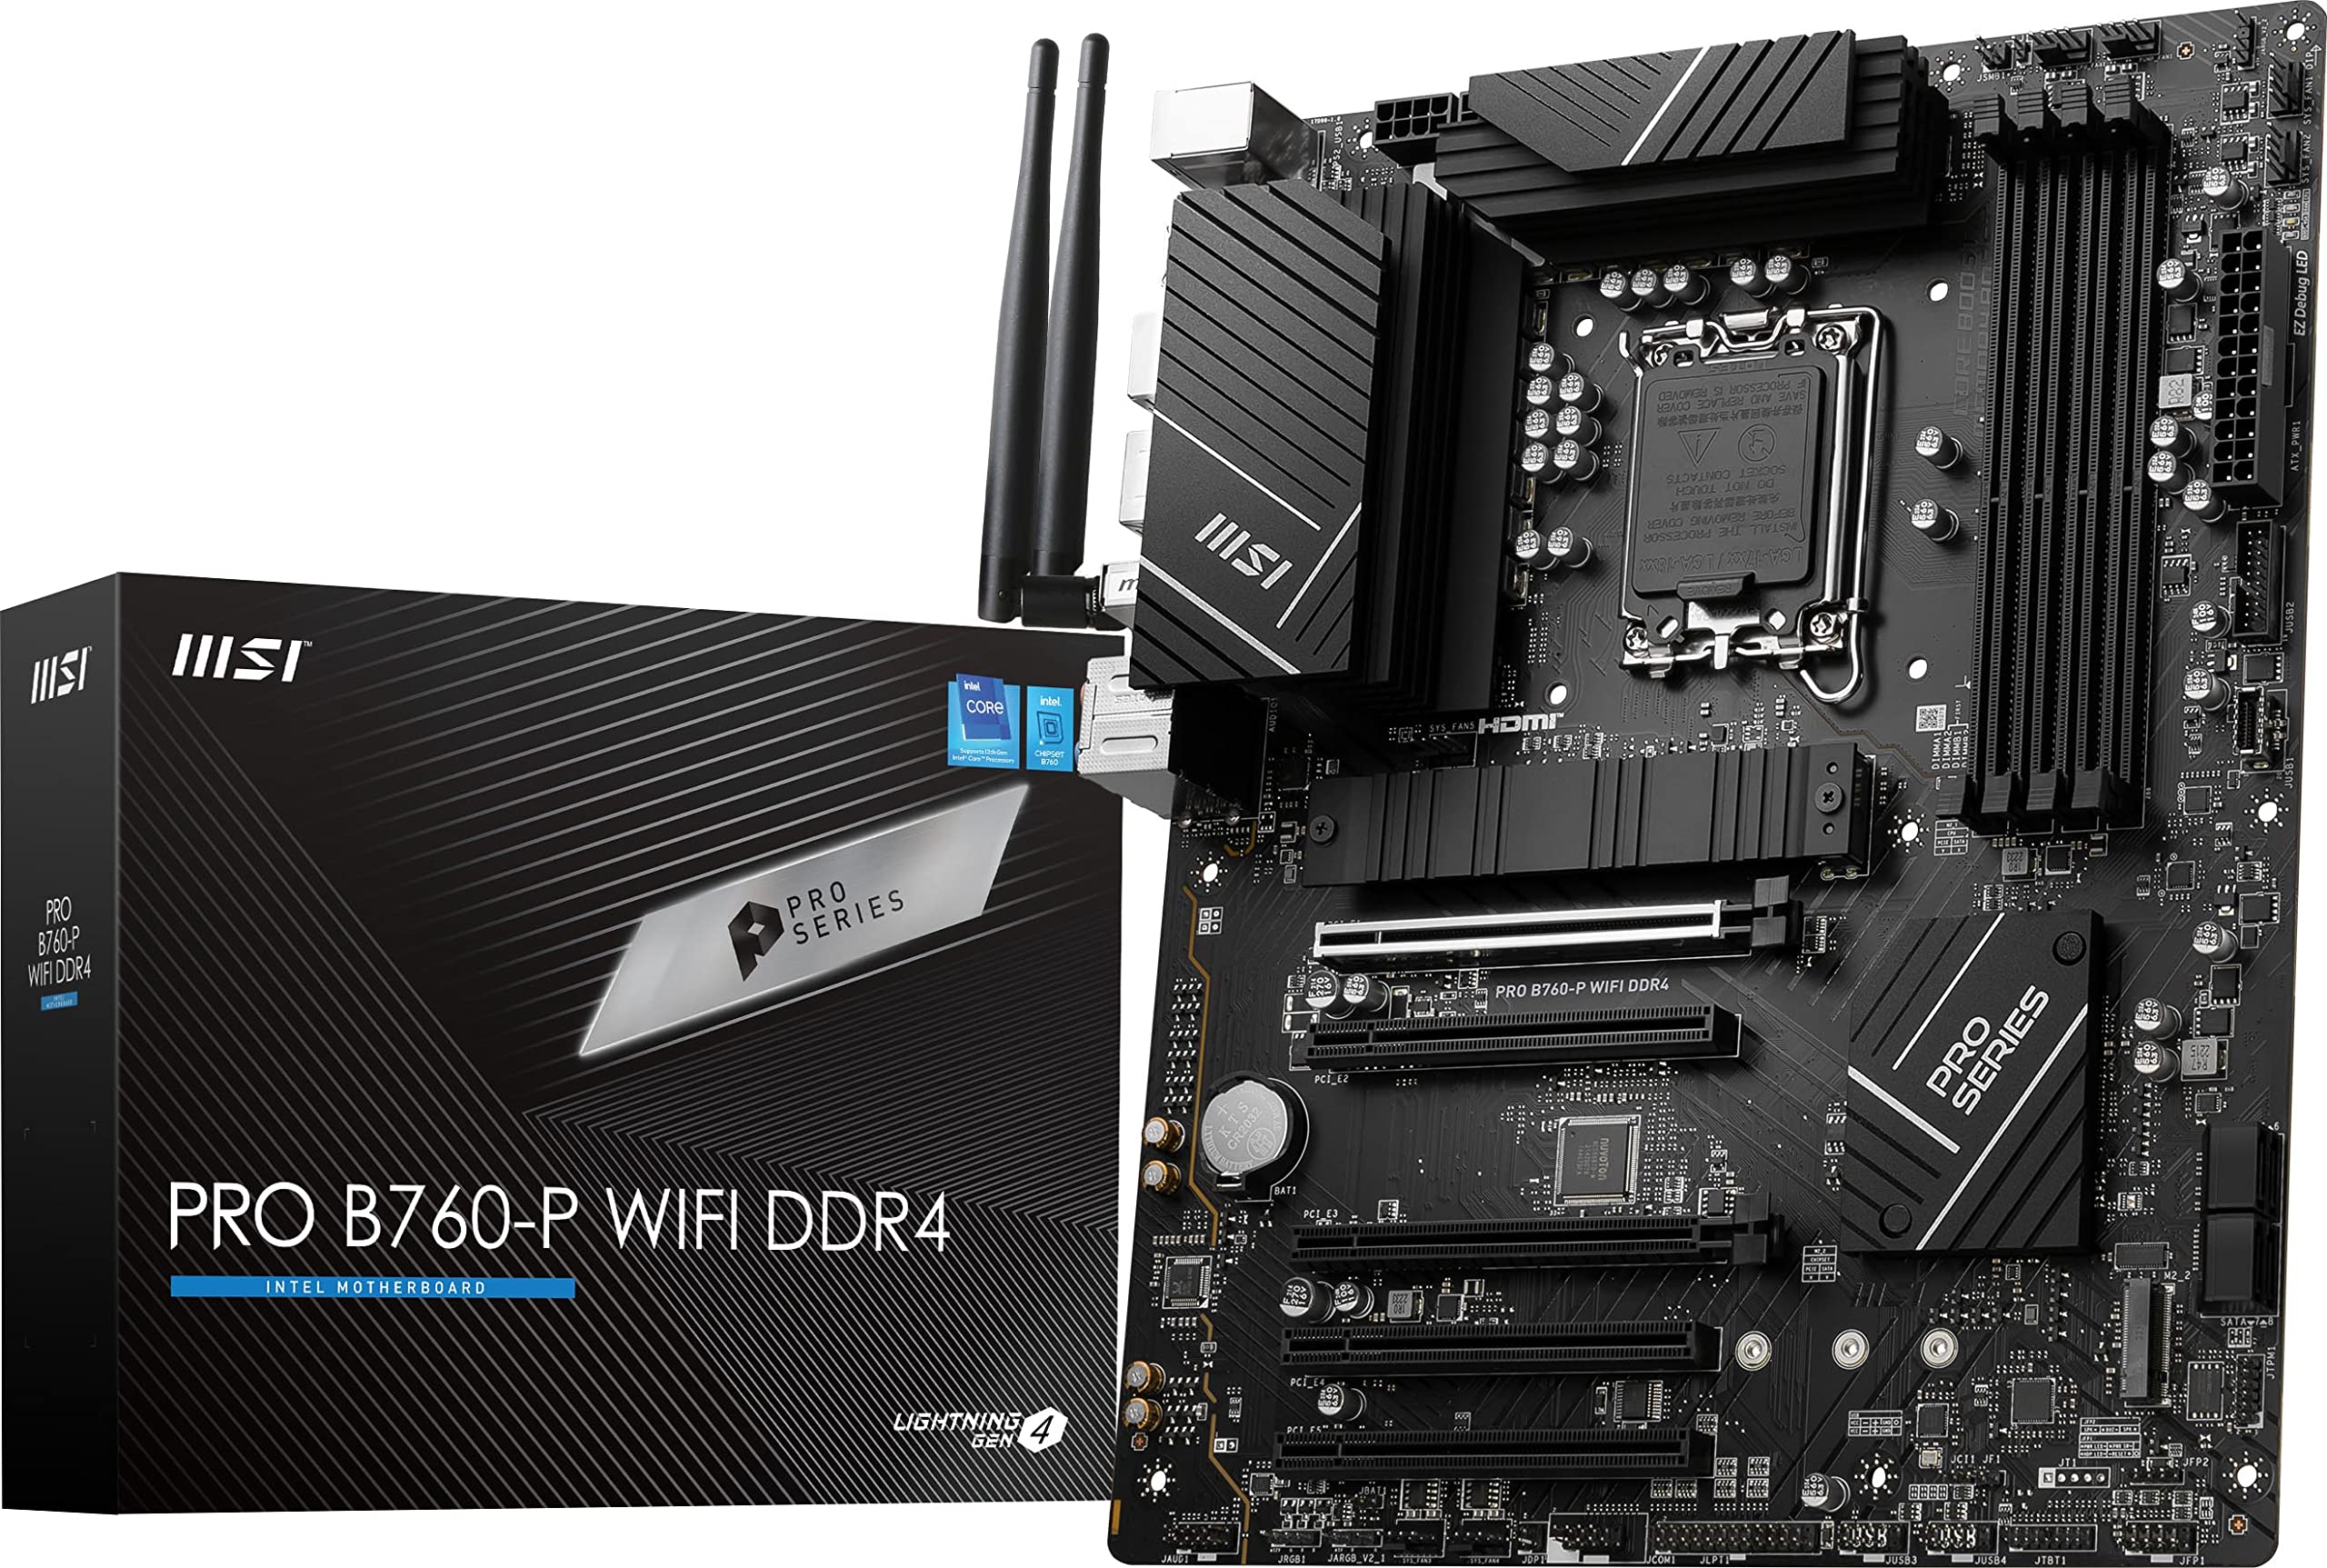 MSI PRO B760-P WiFi DDR4 ProSeries Motherboard (Supports 12th/13th Gen Intel Processors, LGA 1700, DDR4, PCIe 4.0, M.2, 2.5Gbps LAN, USB 3.2 Gen2, Wi-Fi 6E, ATX)